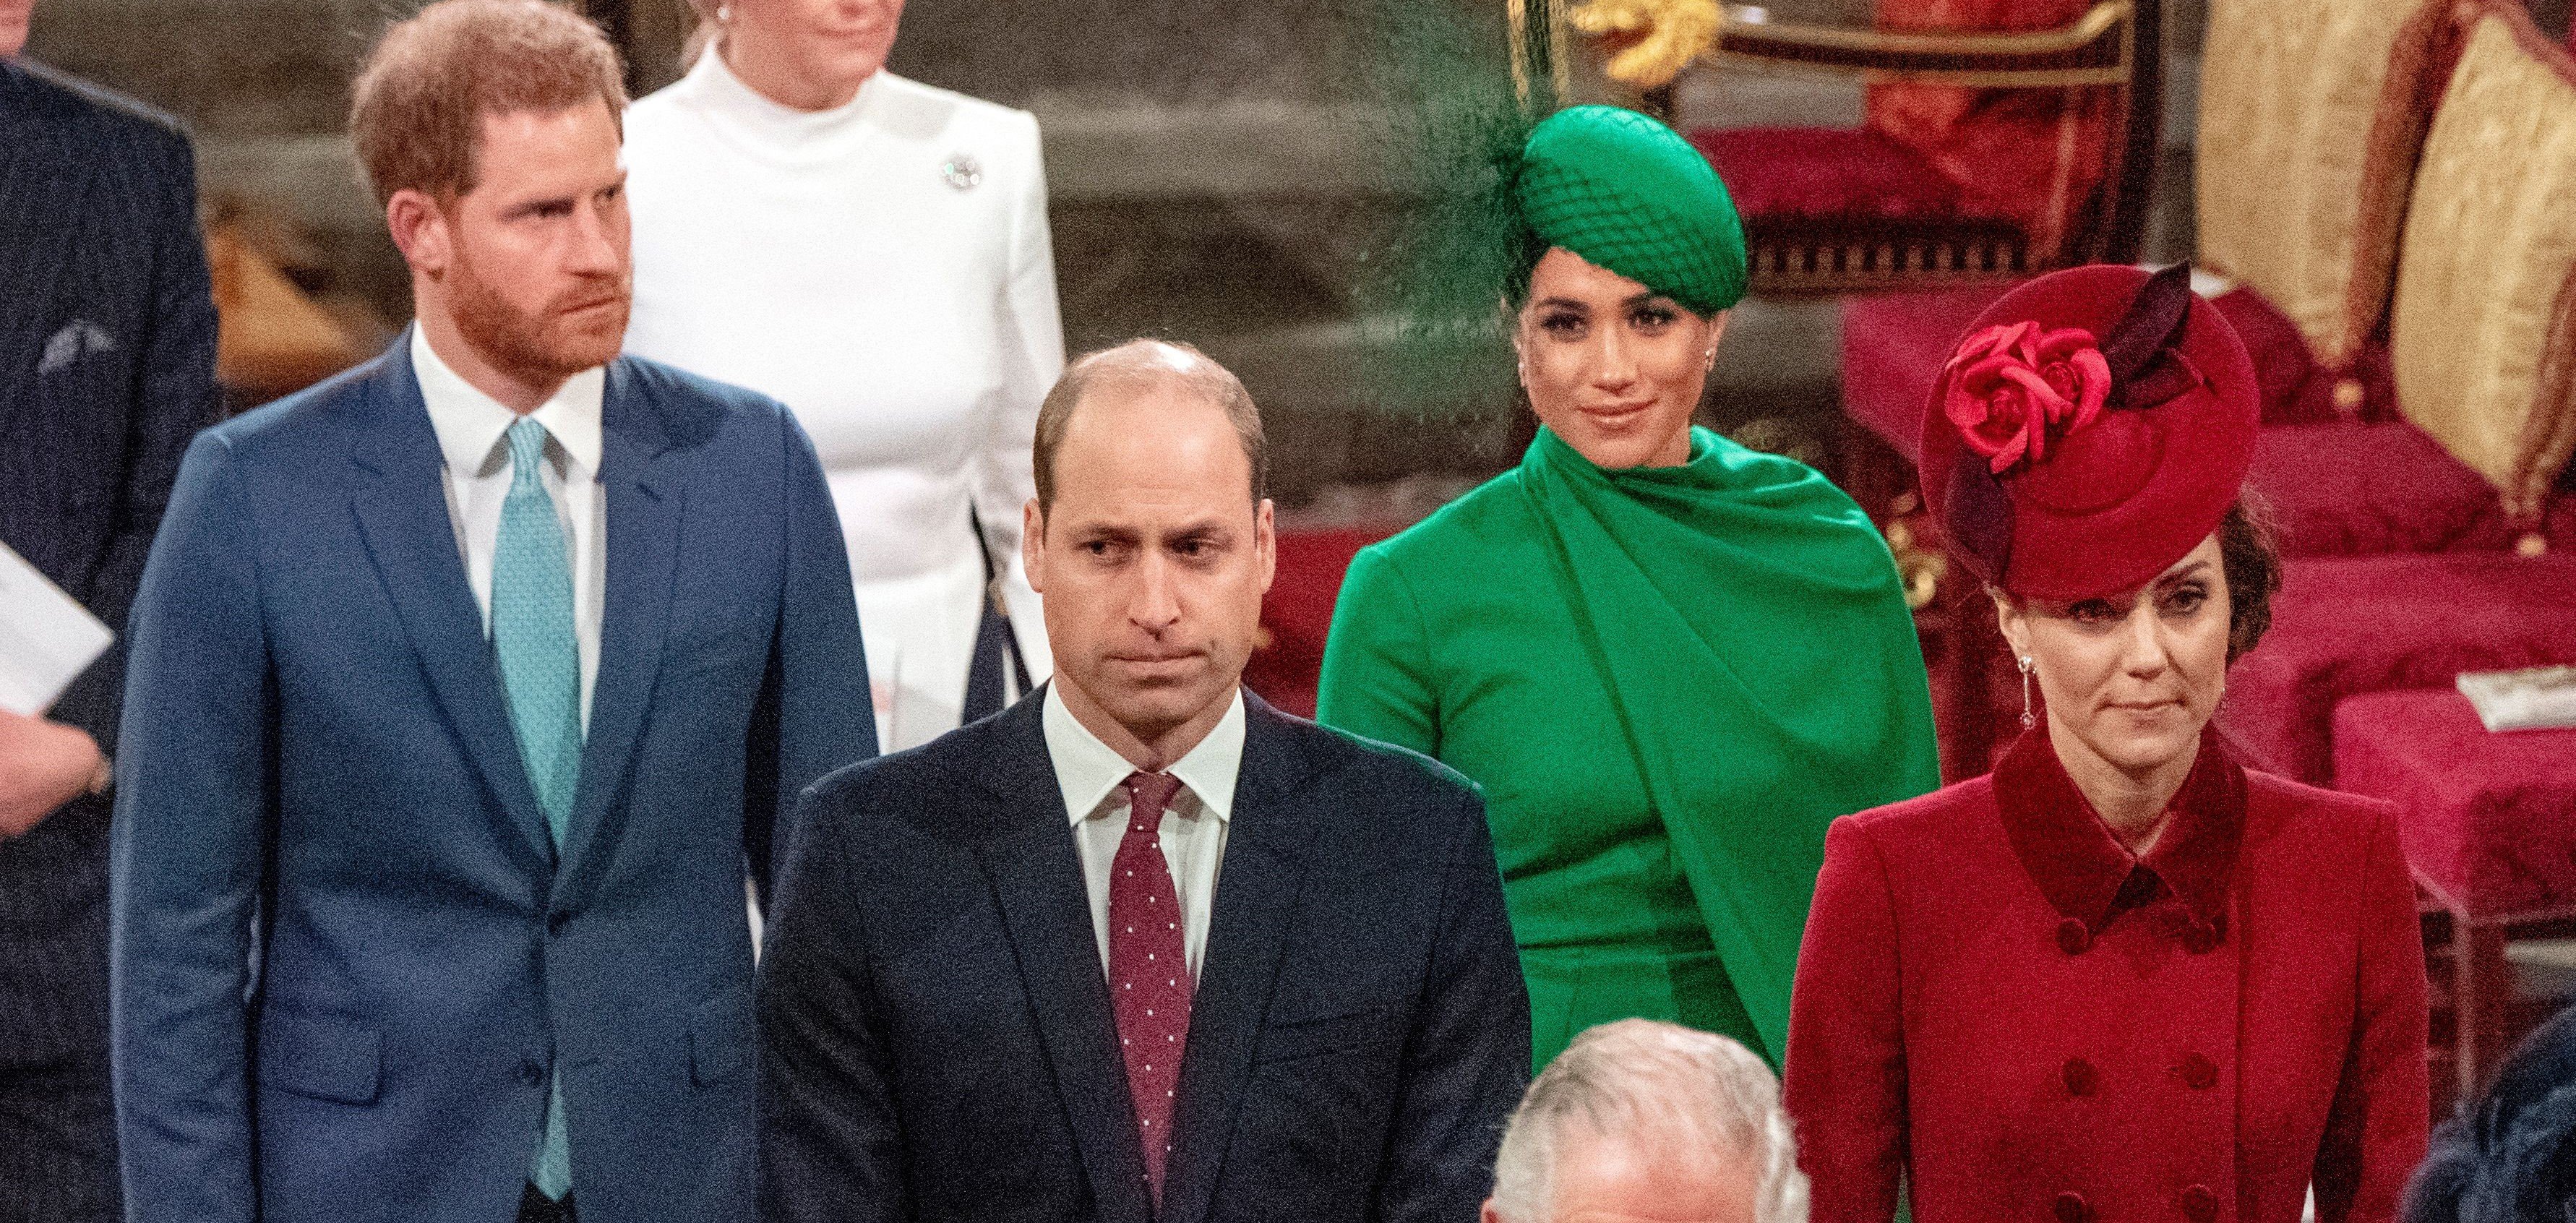 Prinz Harry, Meghan Markle, Prinz William und Kate Middleton verlassen den Commonwealth Service am 9. März 2020